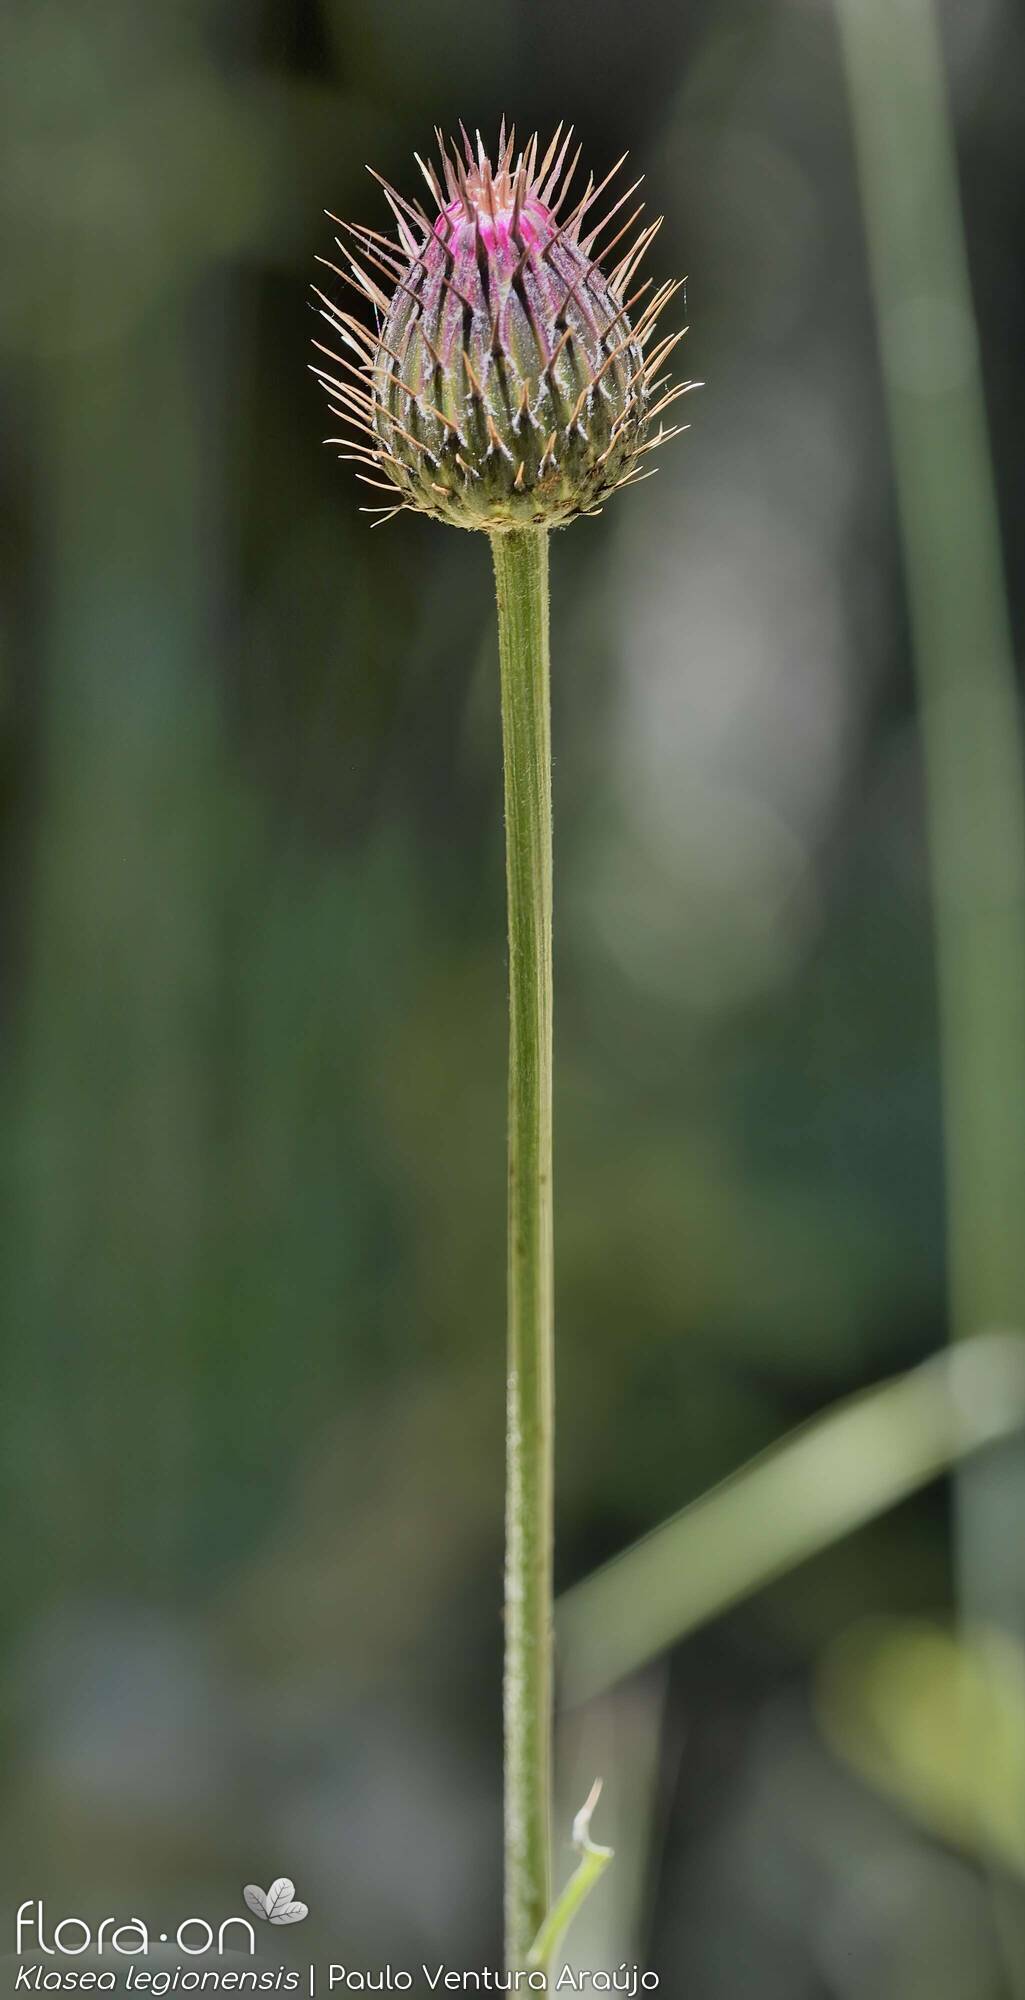 Klasea legionensis - Flor (geral) | Paulo Ventura Araújo; CC BY-NC 4.0